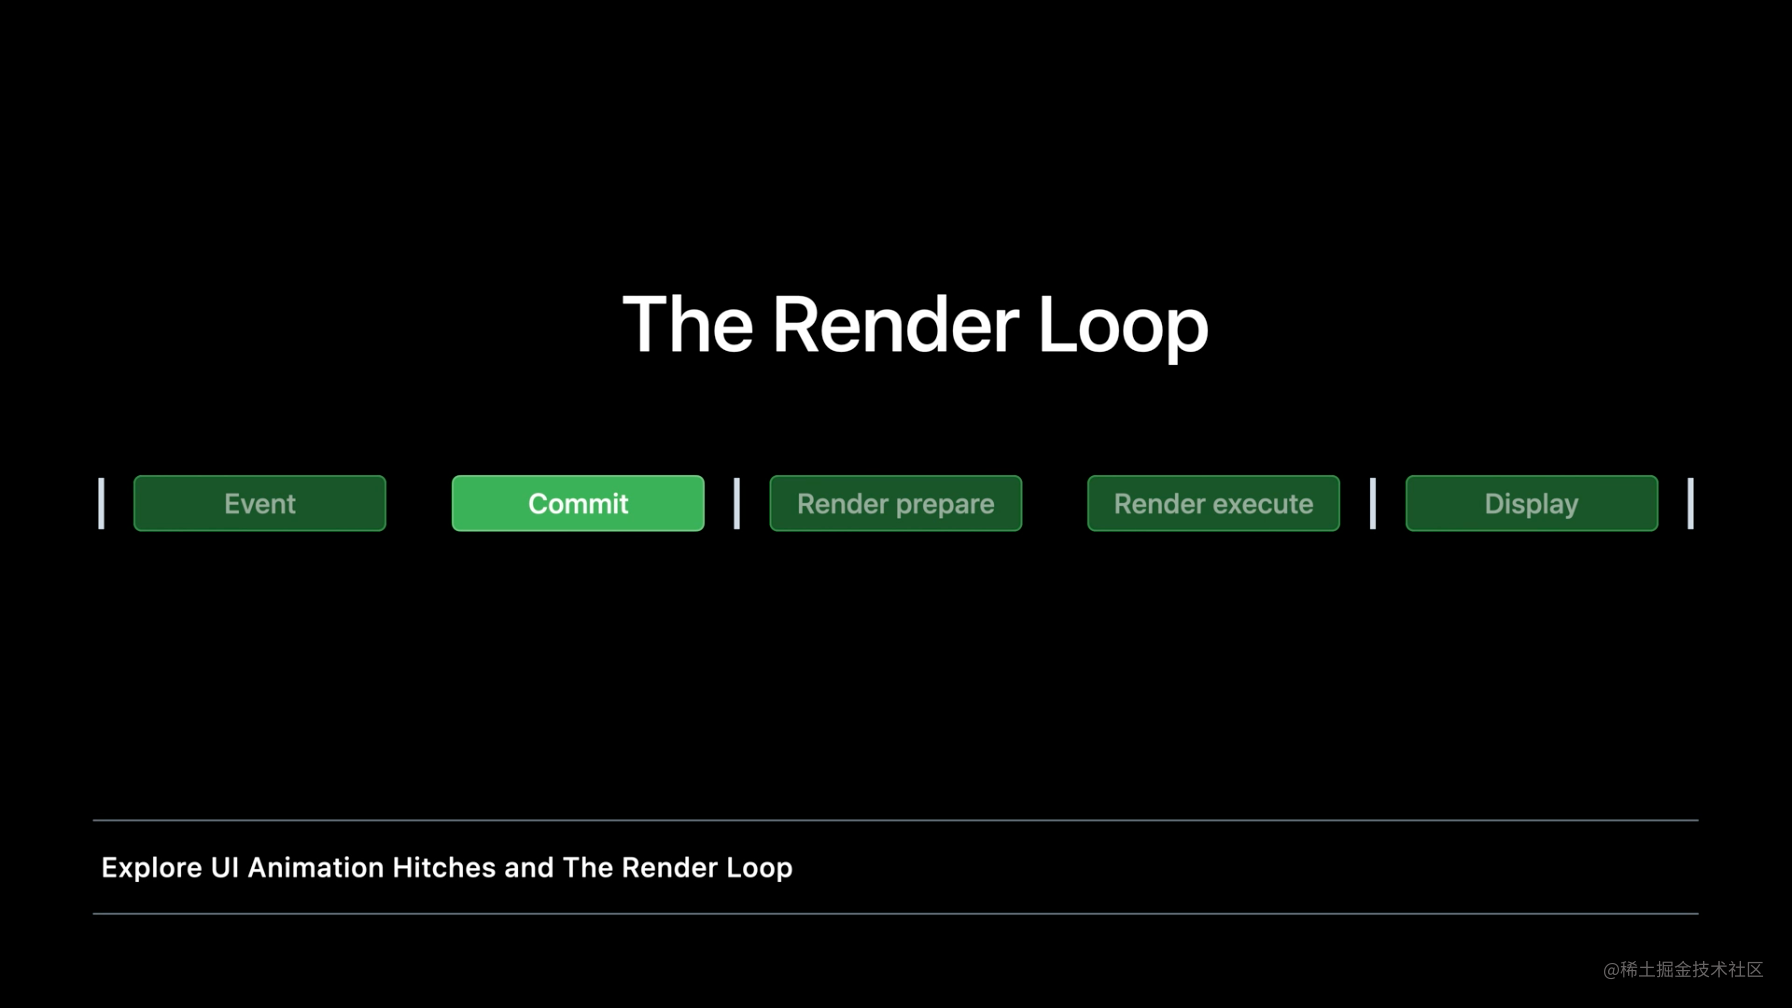 The Render Loop